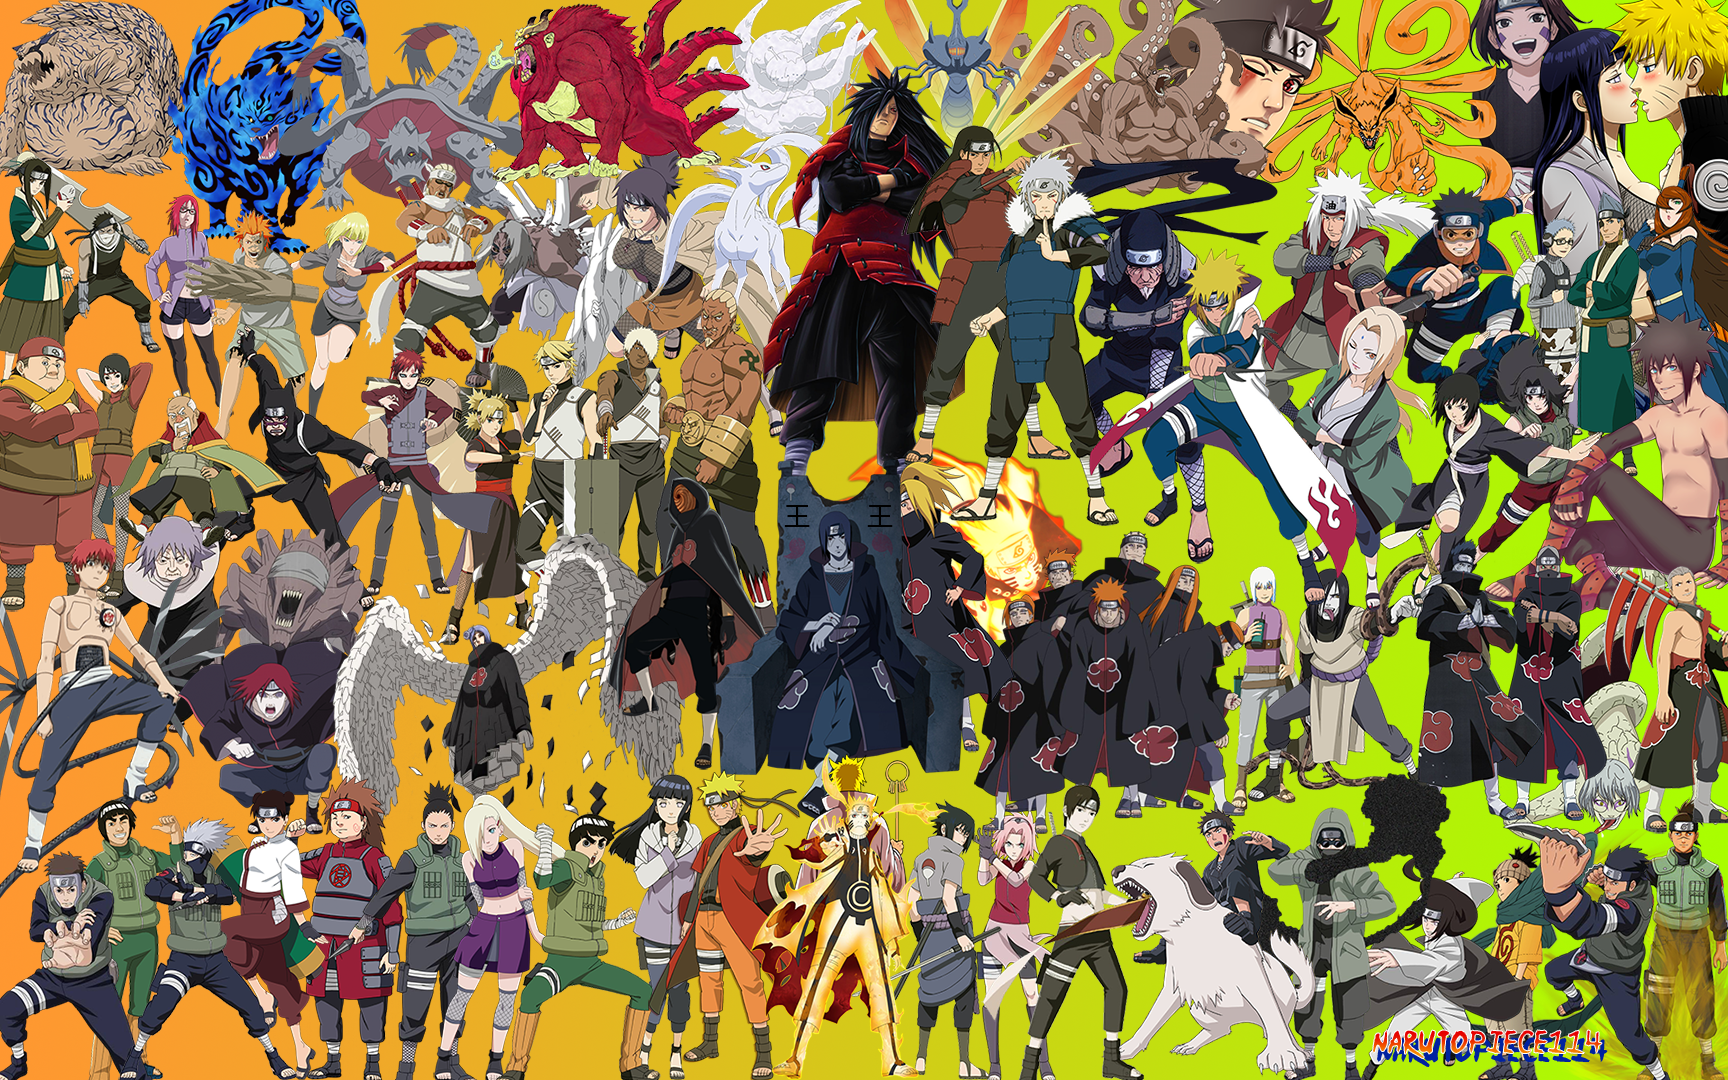 All Naruto Characters Wallpaper